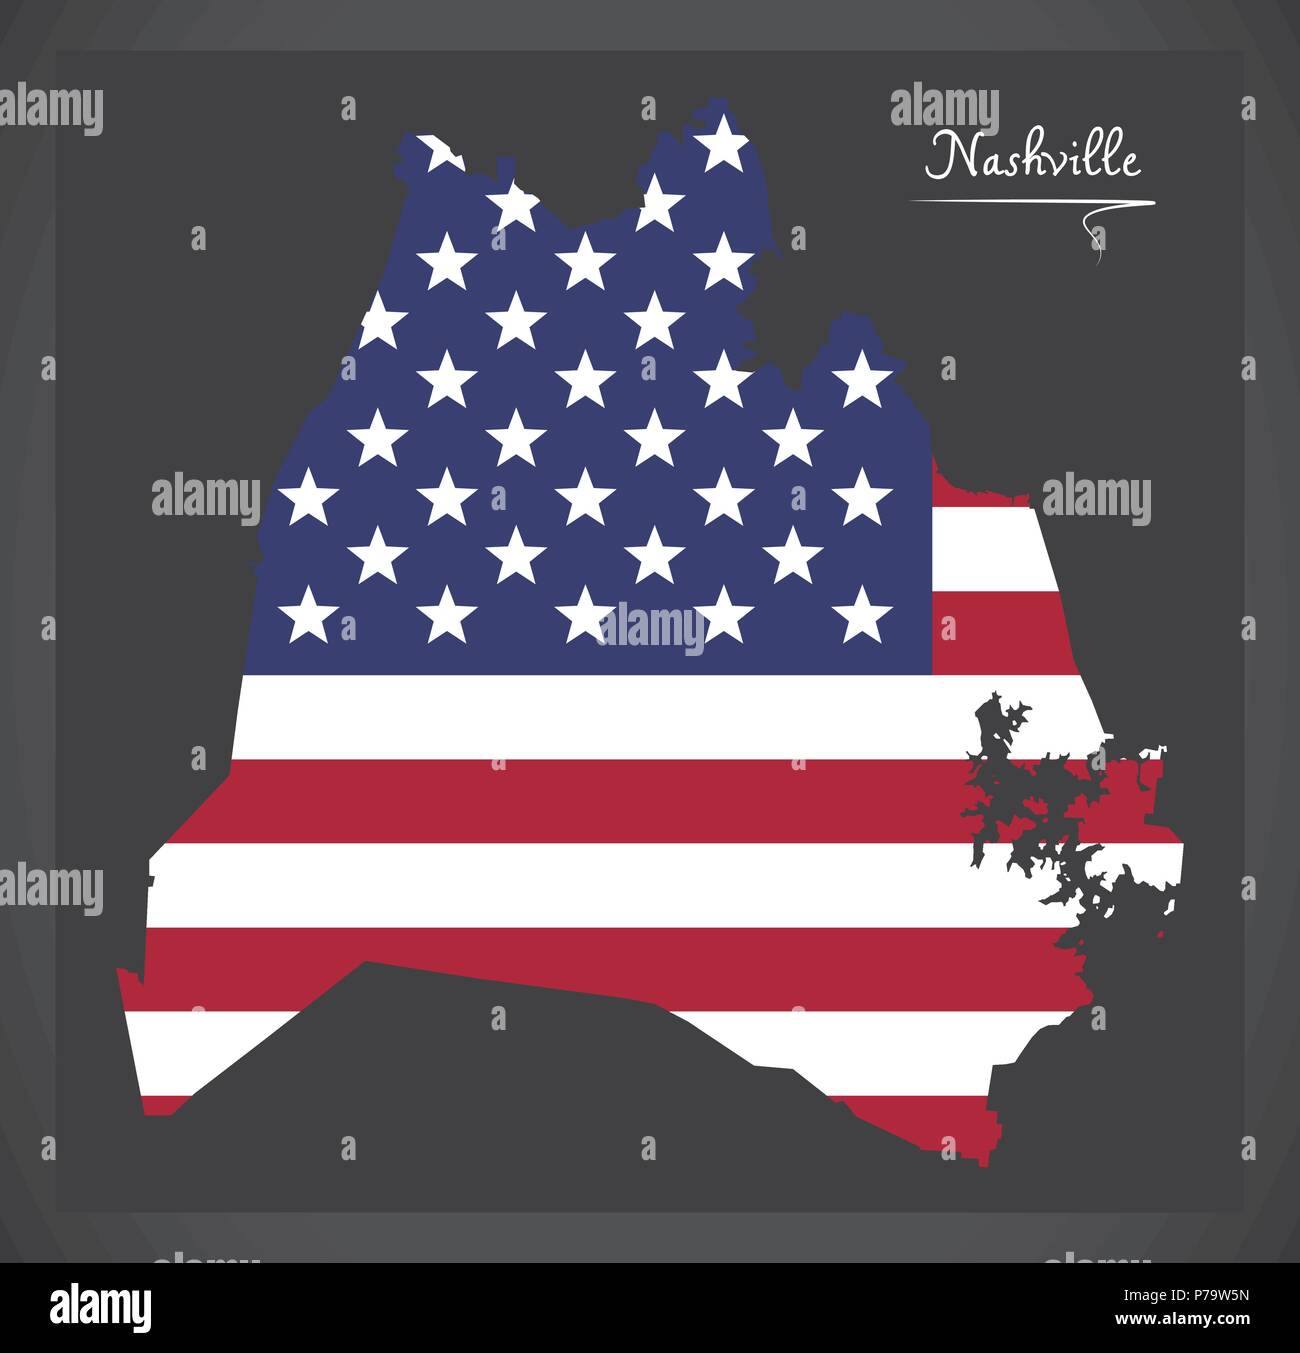 Nashville Tennessee Karte mit Amerikanischen Nationalflagge Abbildung Stock Vektor